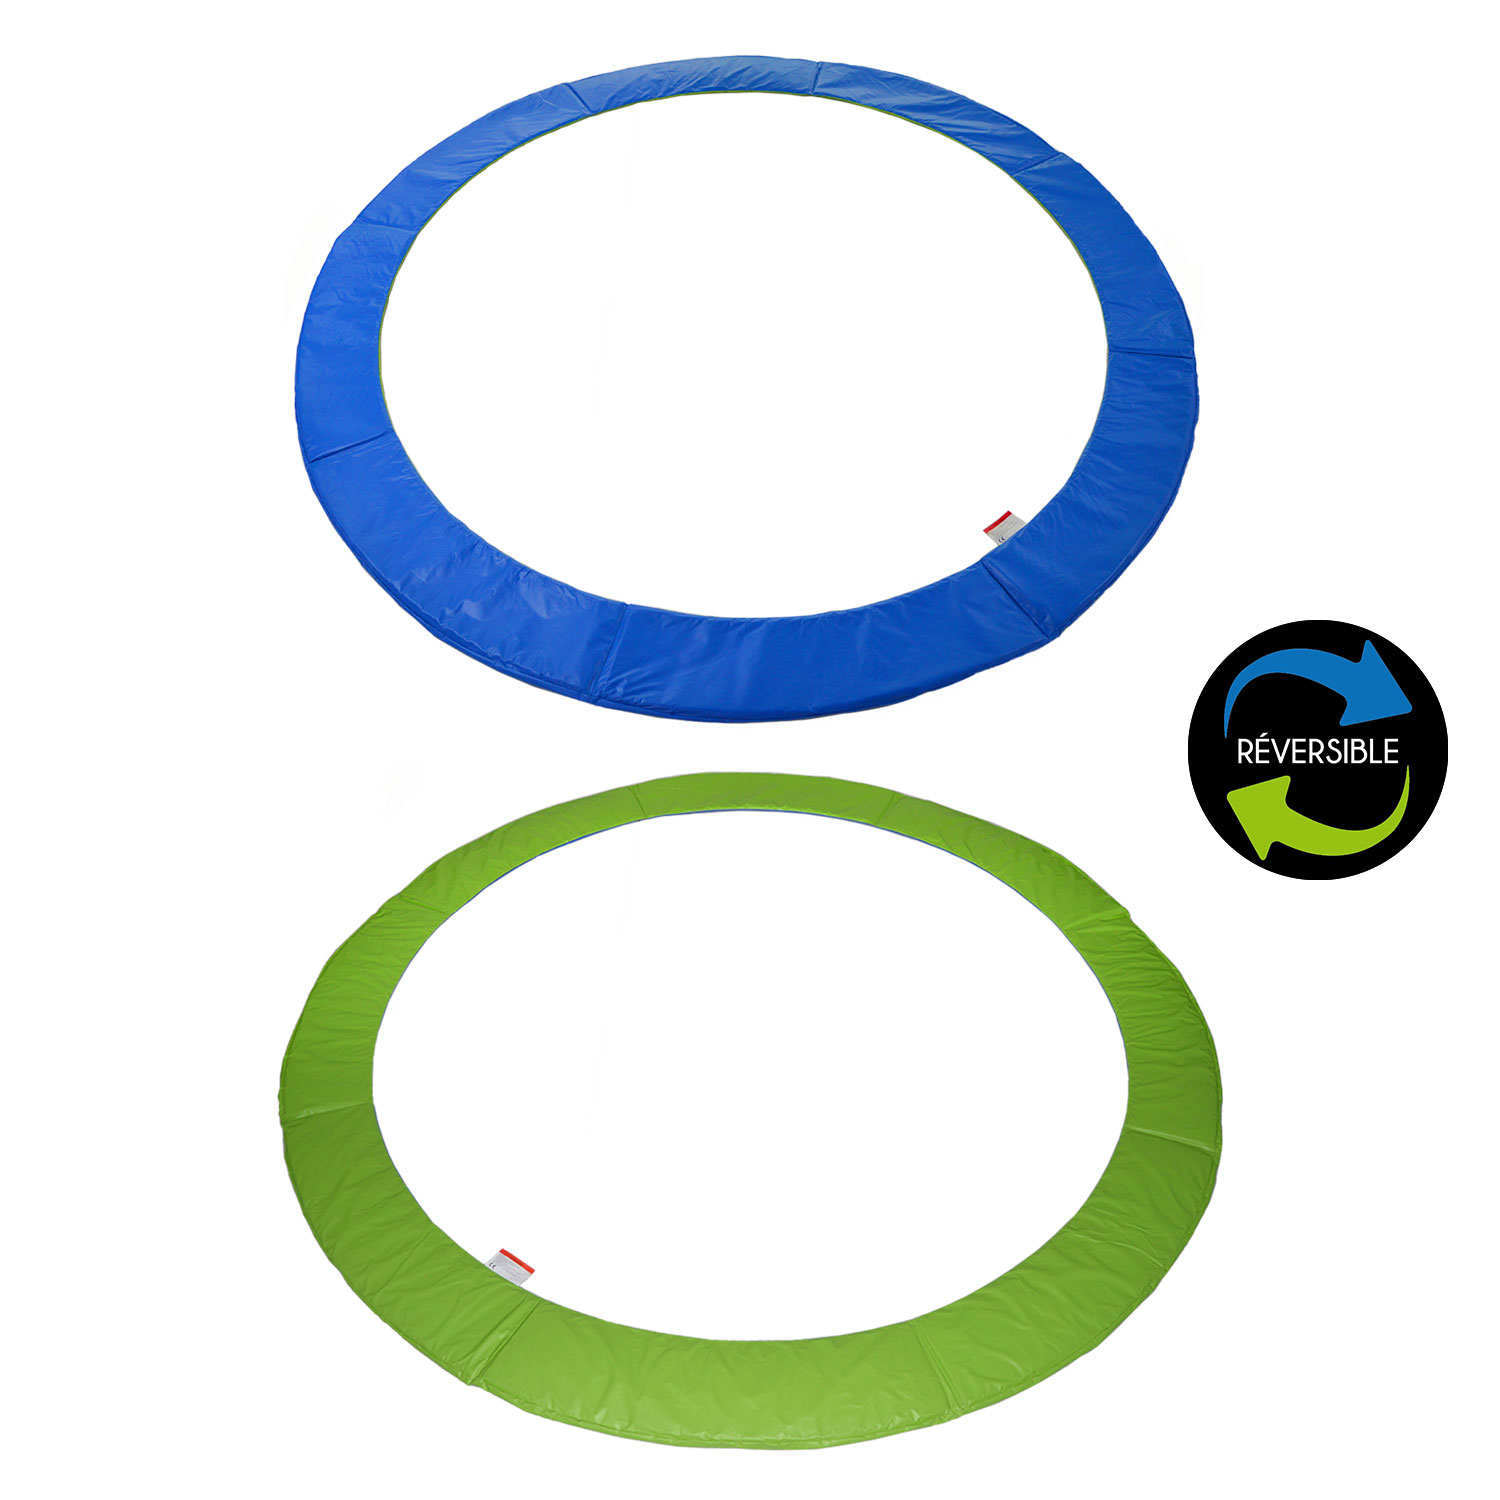 Matelas de protection réversible pour trampoline Ø430cm MELBOURNE - vert/bleu